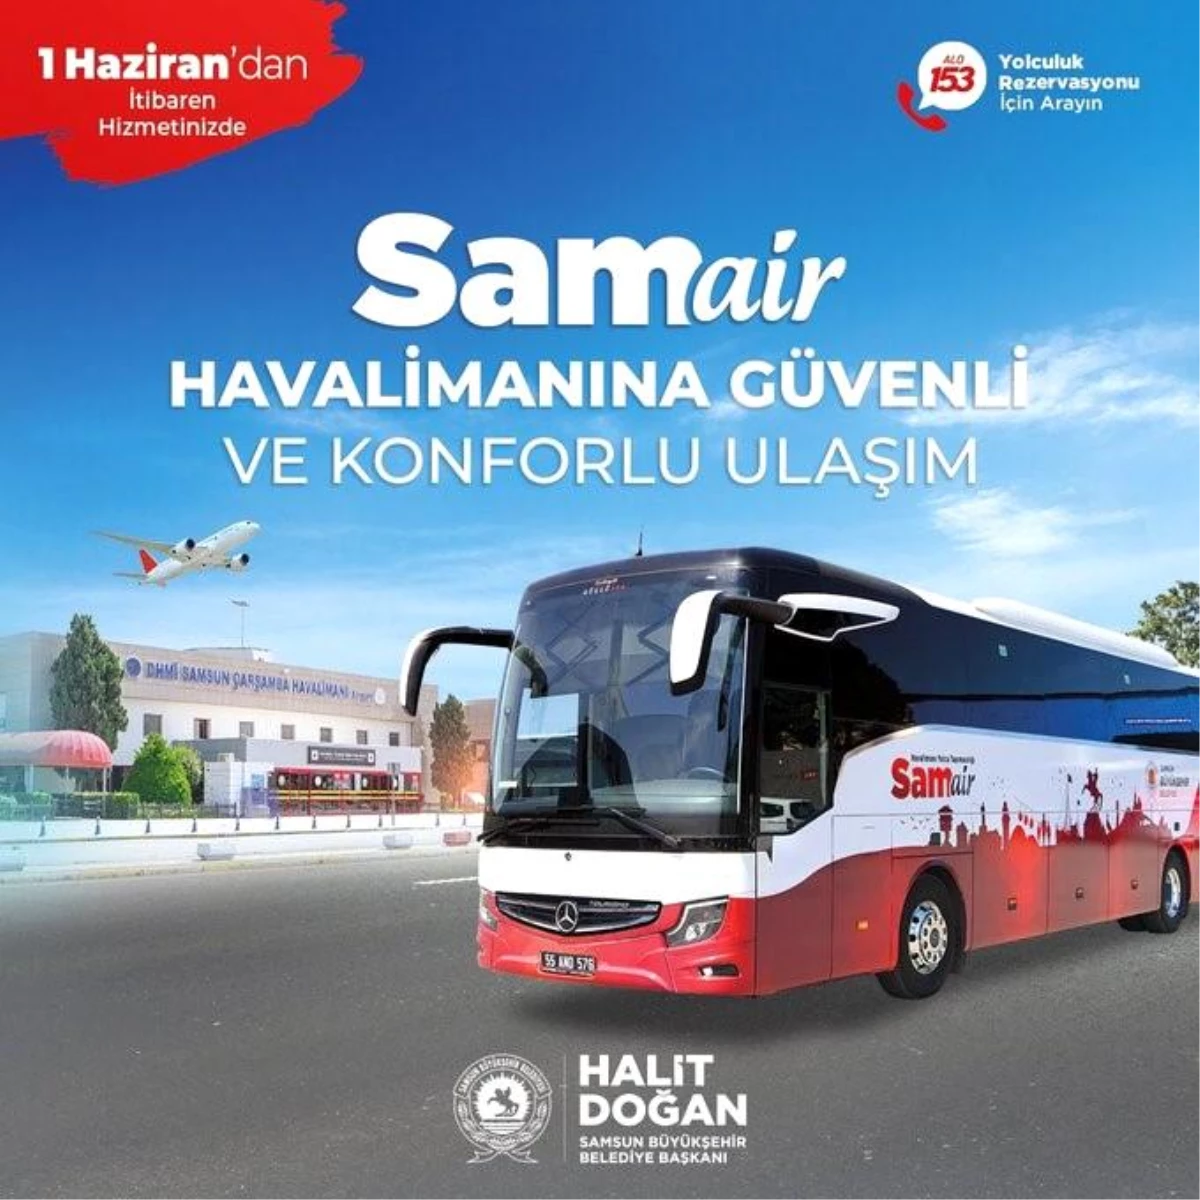 Samsun Büyükşehir Belediyesi, SAMAIR ile Havalimanı Ulaşım Hizmetini Kendi Verecek